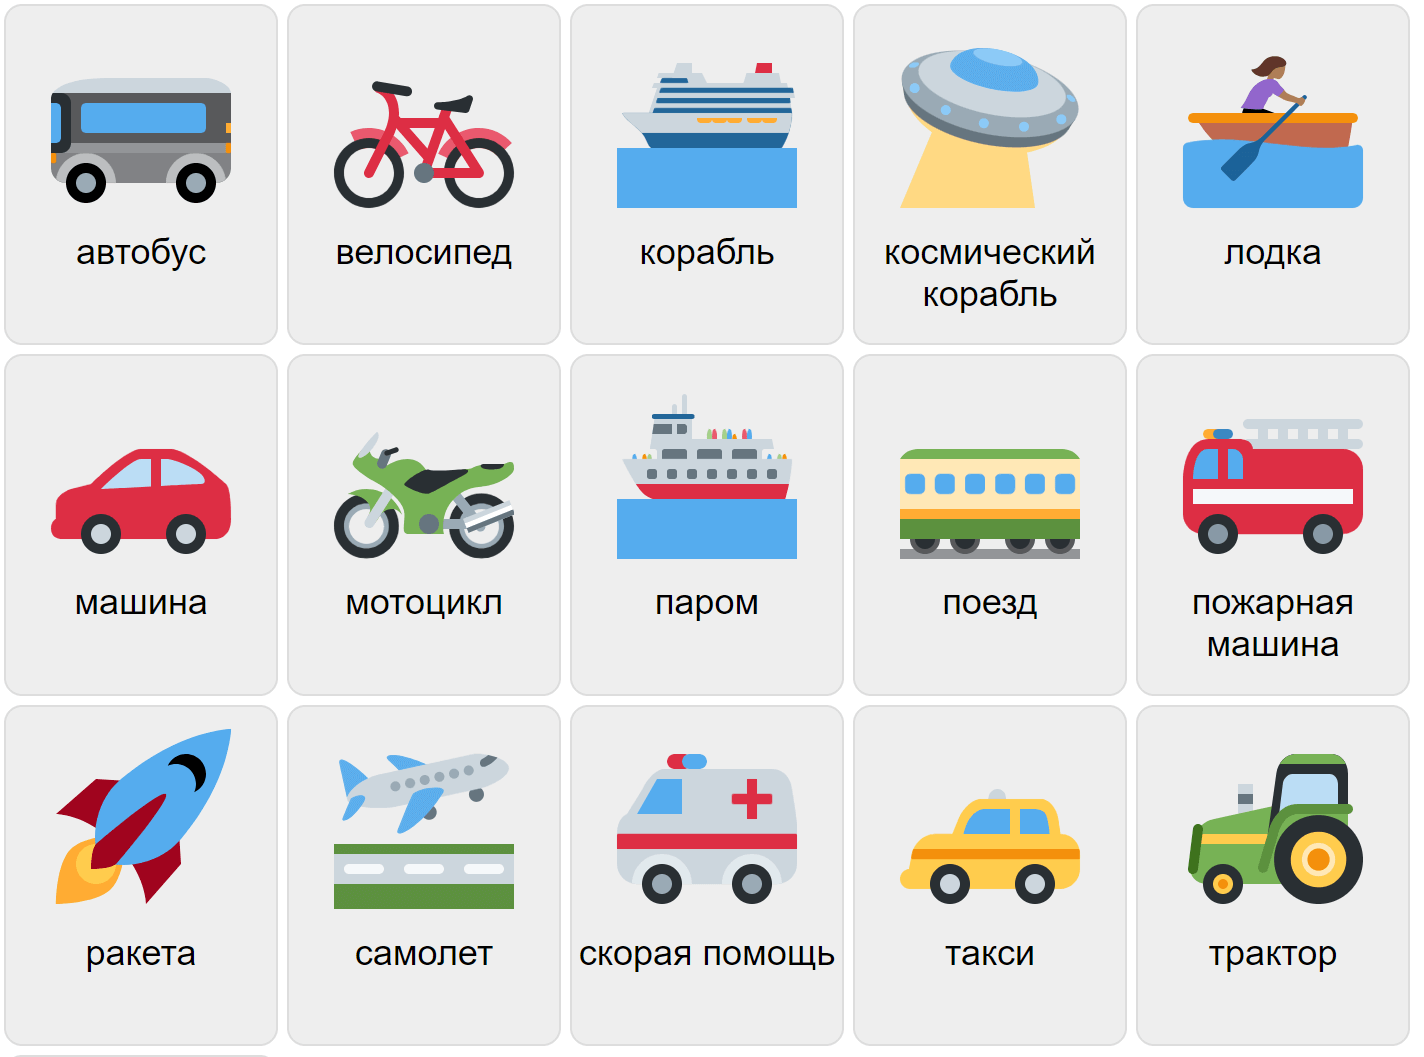 Vehículos en ruso